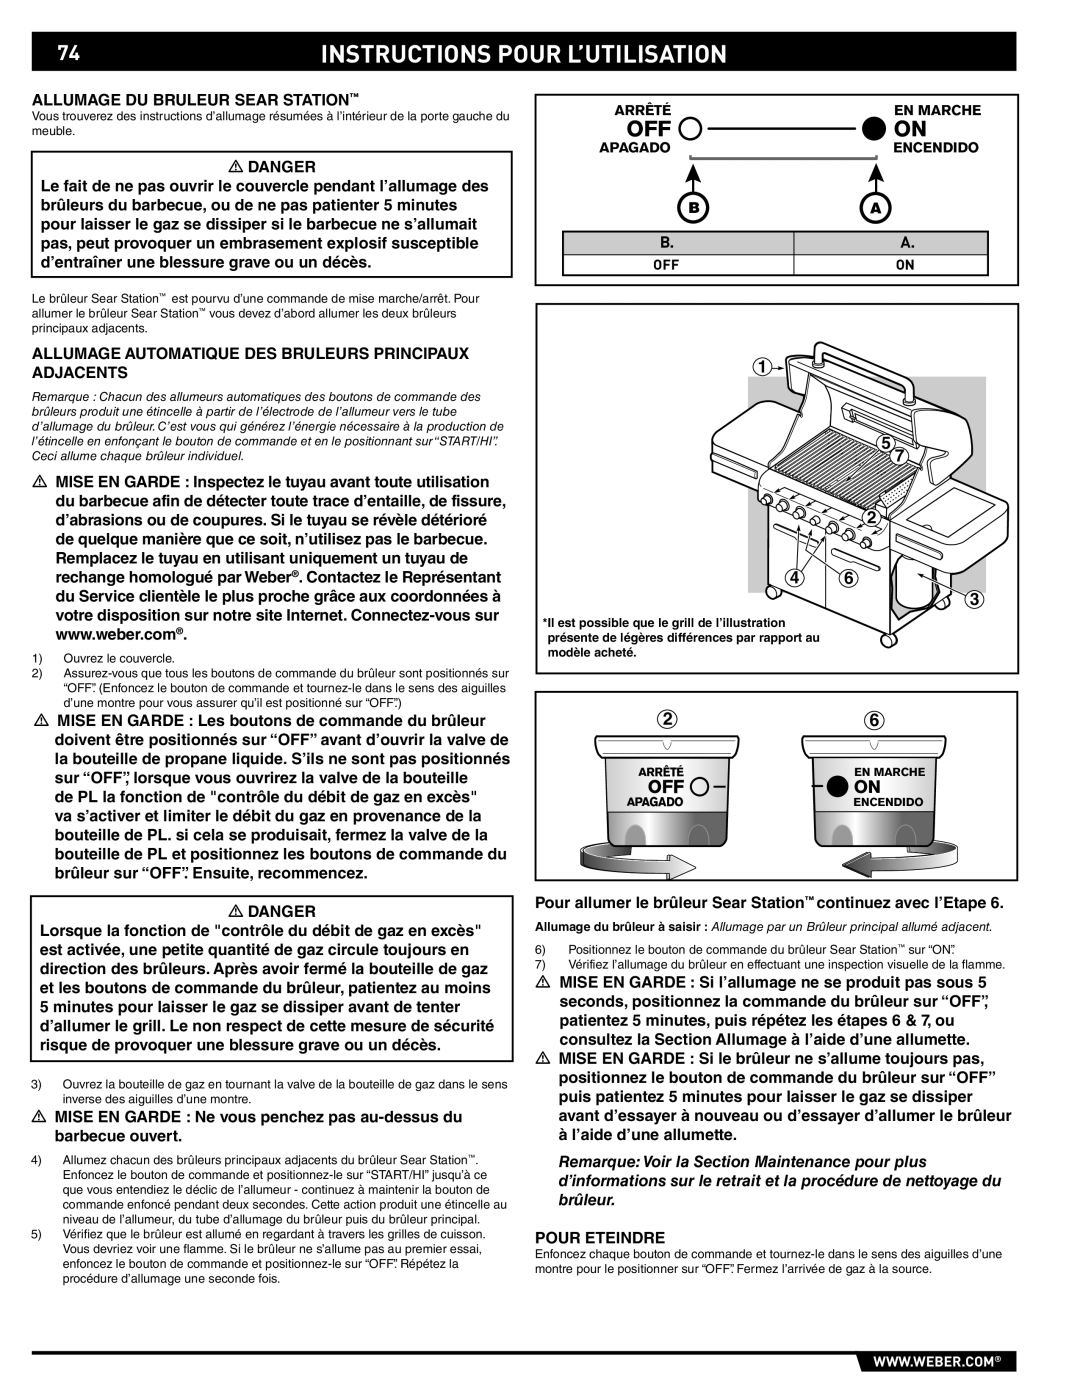 Summit 89190 manual Instructions Pour L’Utilisation 